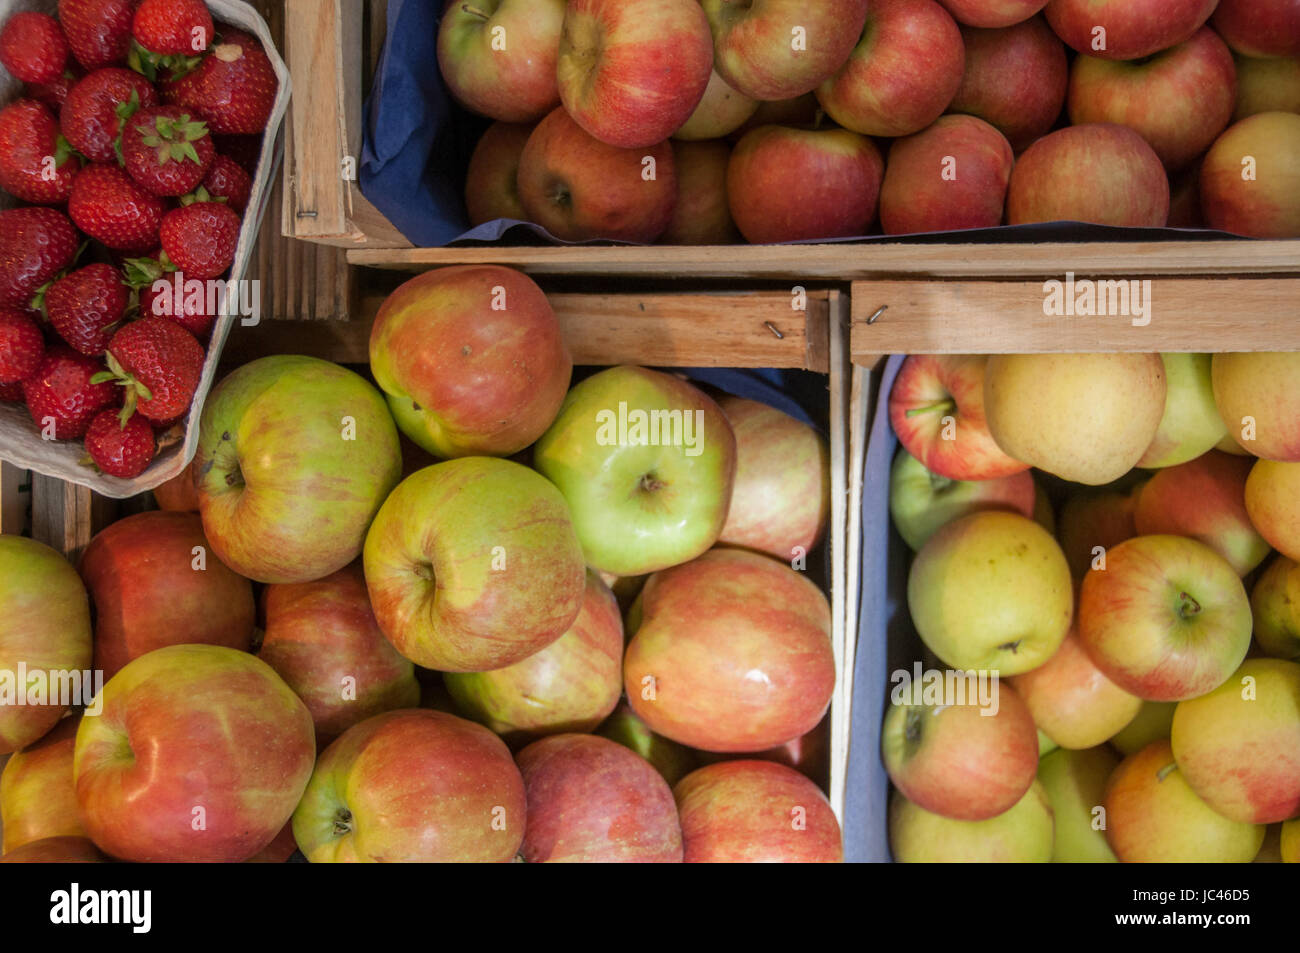 apples & strawberries Stock Photo